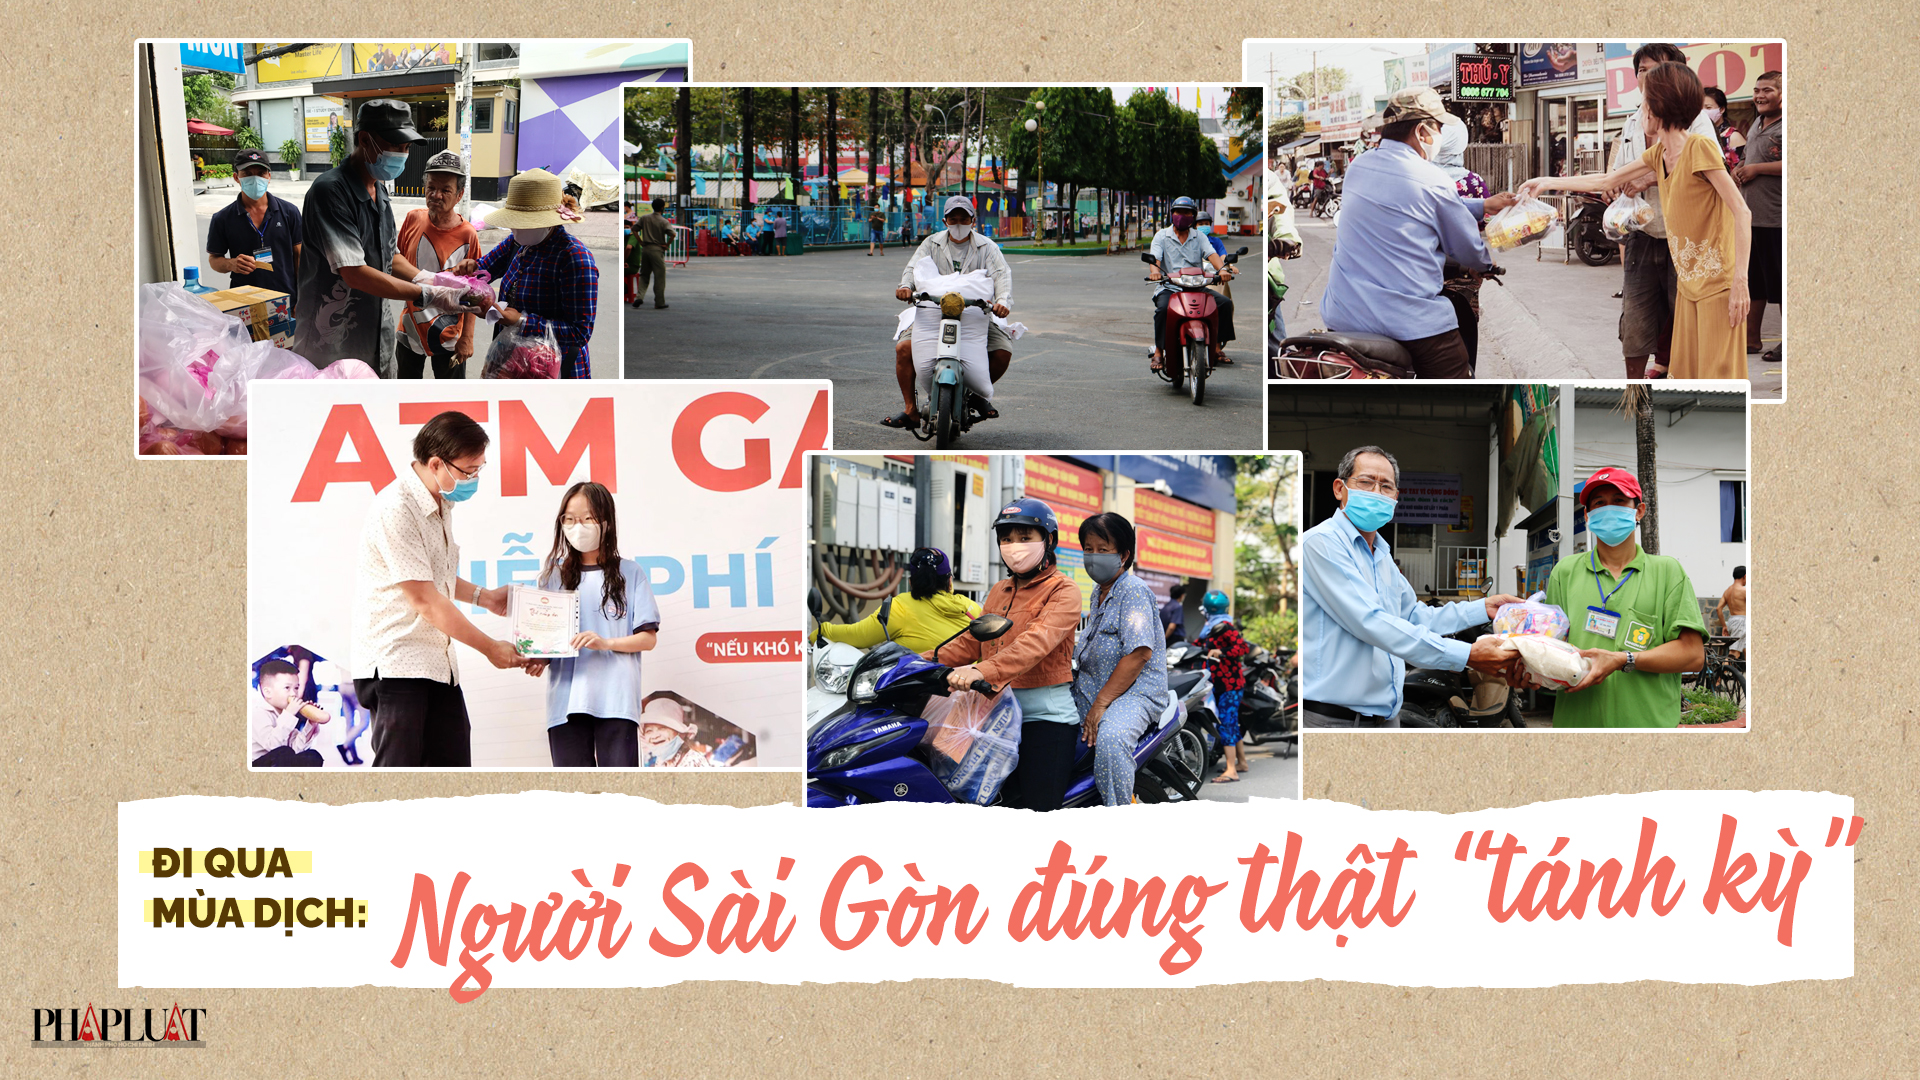 Đi qua mùa dịch: Người Sài Gòn đúng thật 'tánh kỳ'